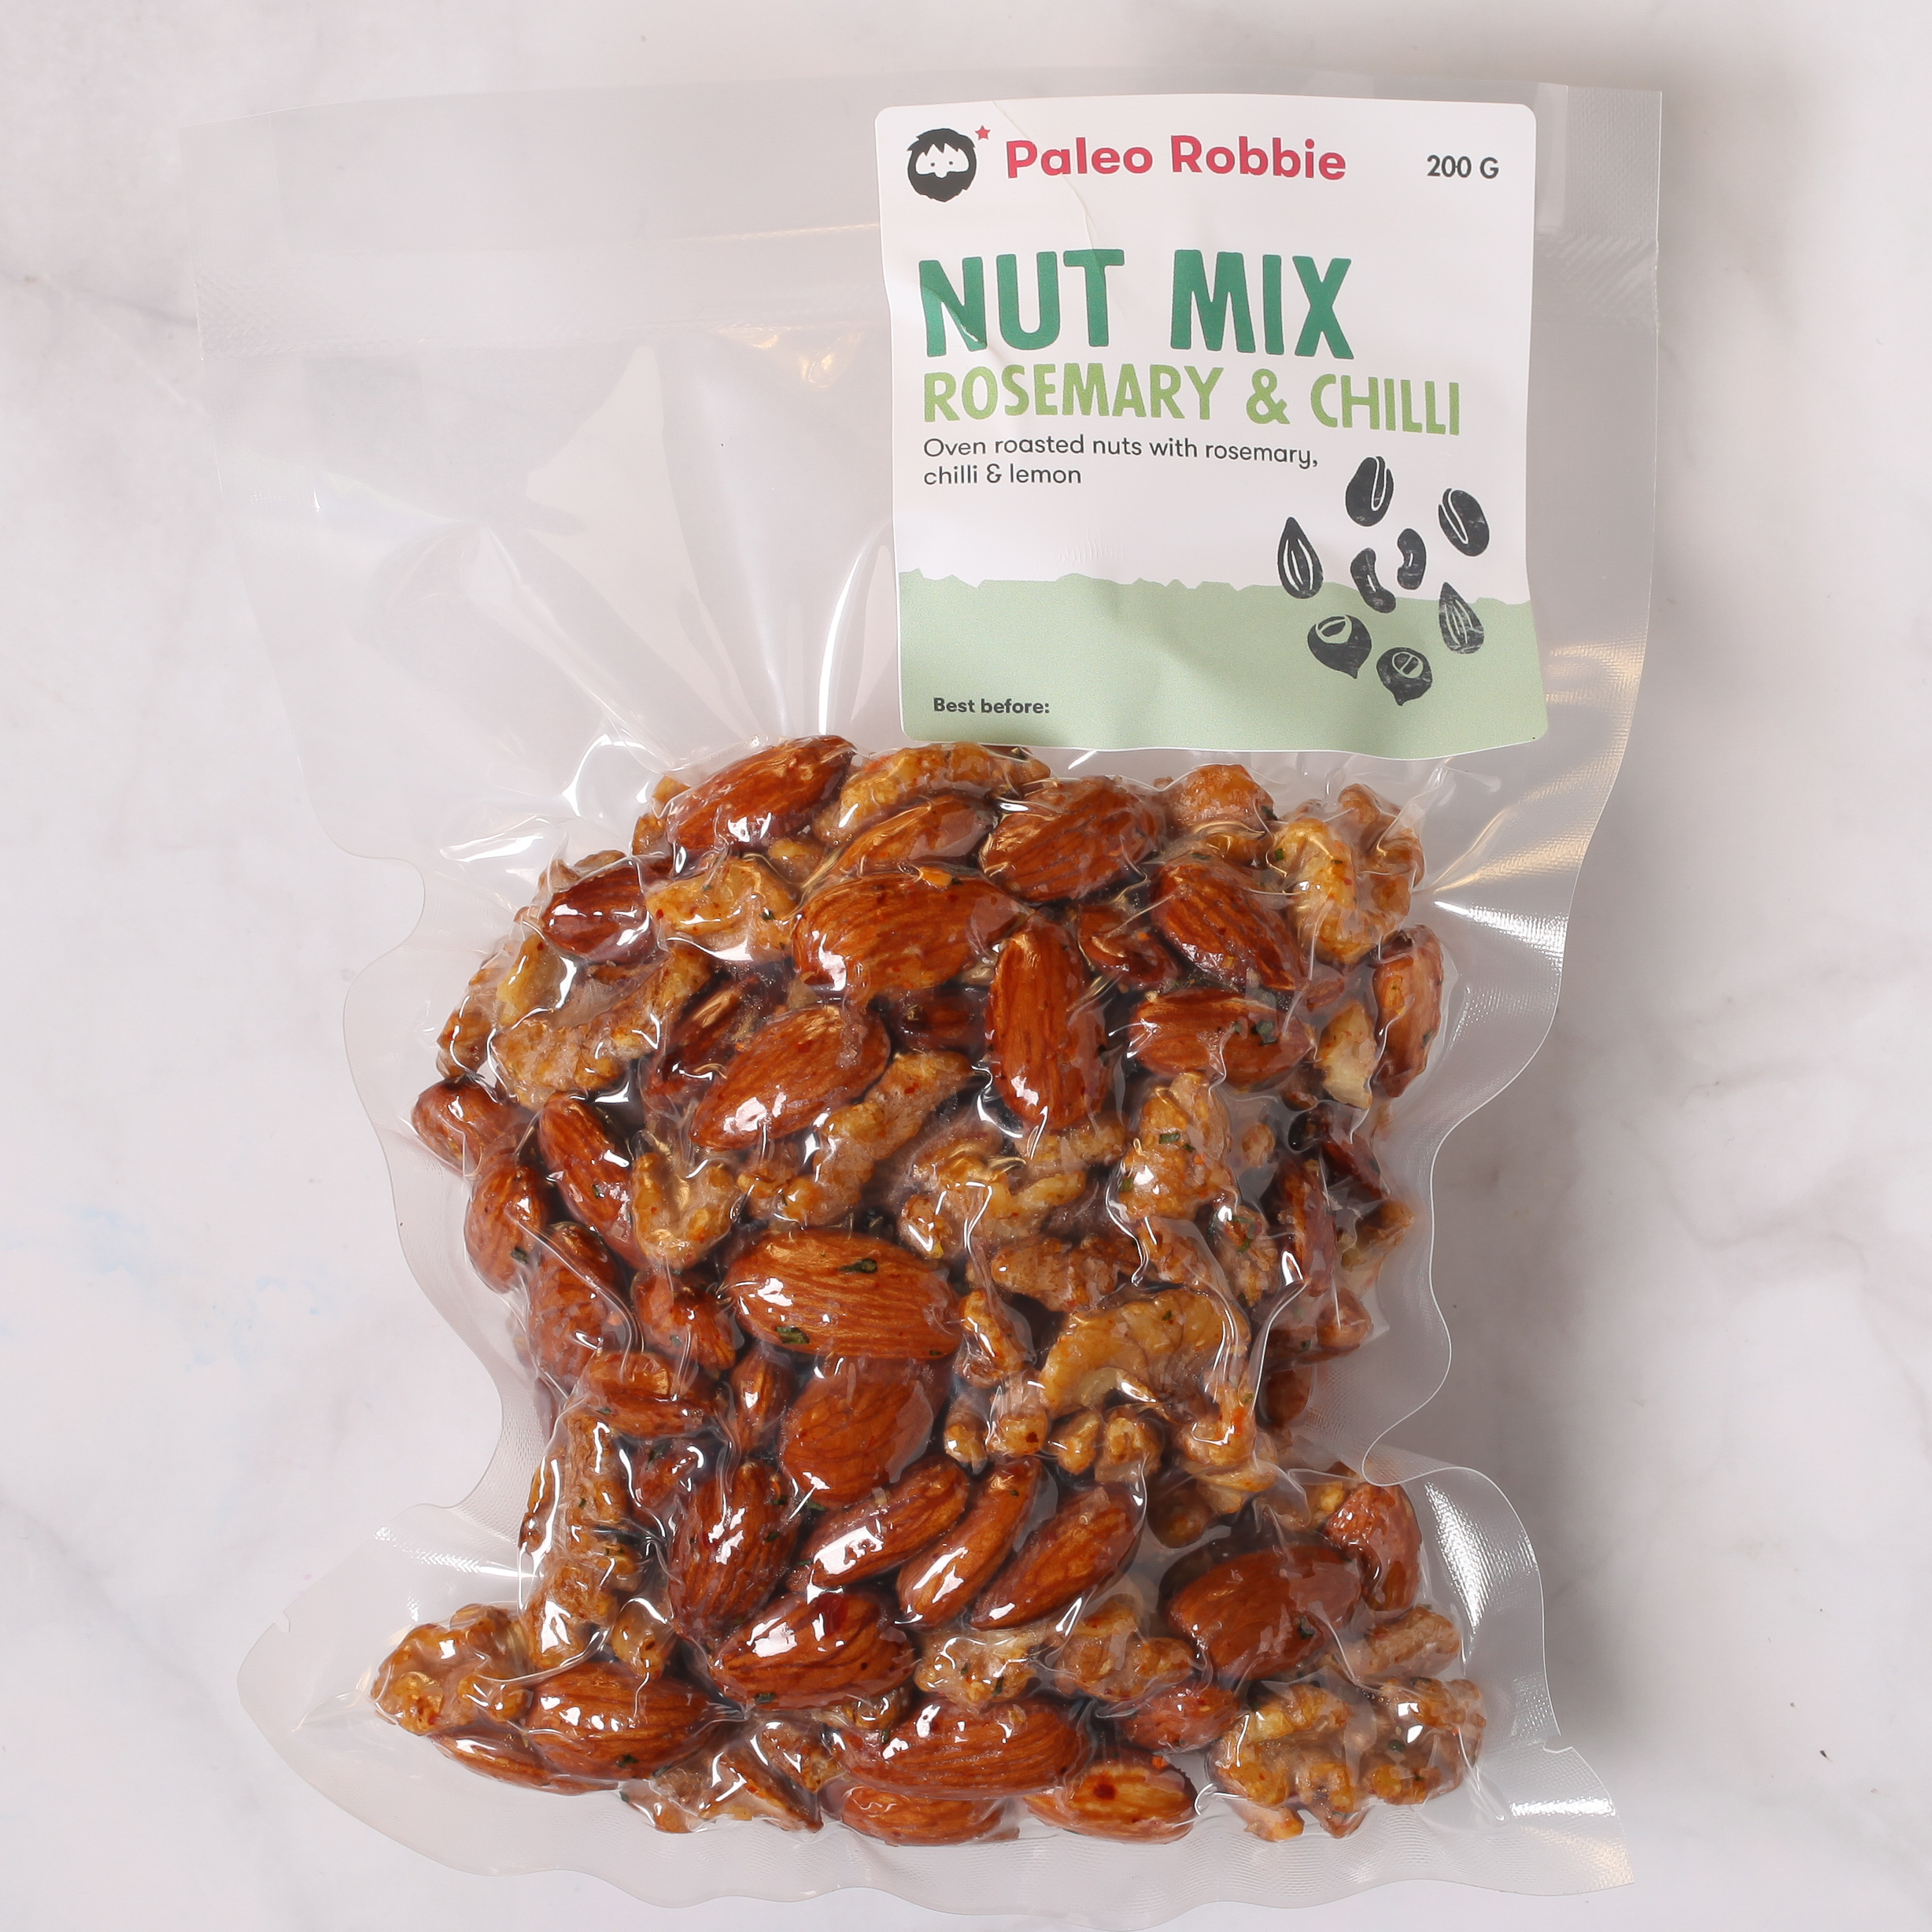 Nut Mix: Walnuts & Almonds, Rosemary, Chili & Lemon